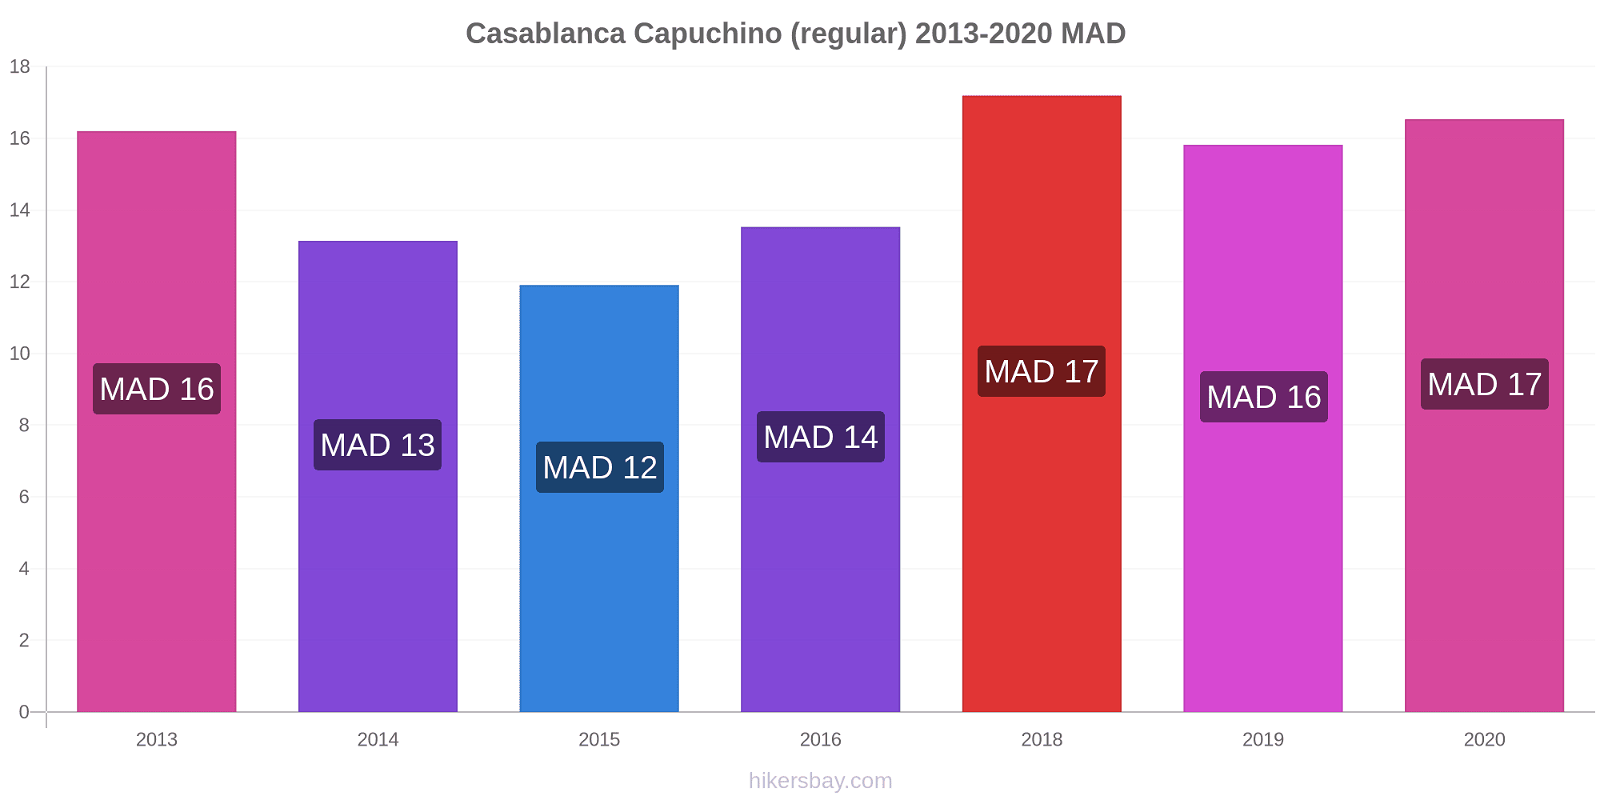 Casablanca cambios de precios Capuchino (regular) hikersbay.com